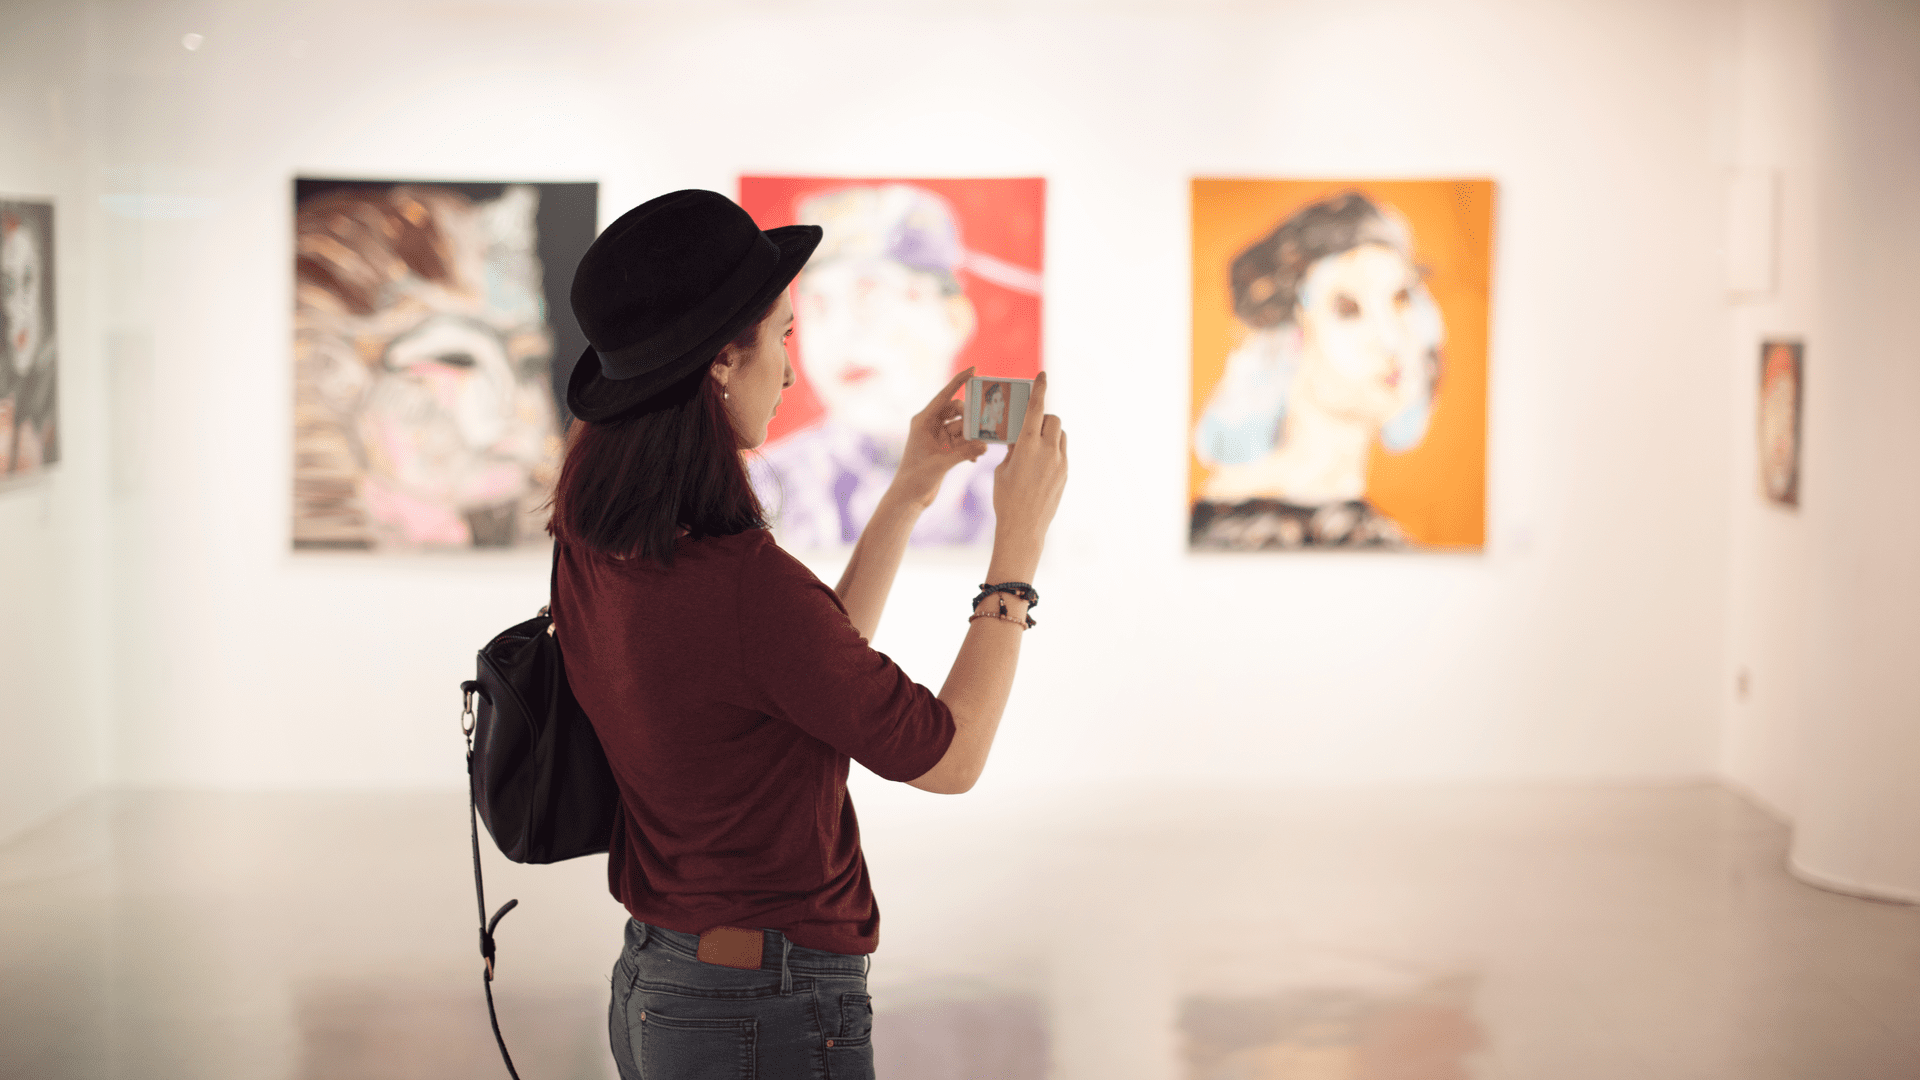 Mẹo nhanh: Bạn hầu như có thể tham quan các bảo tàng tại nhà với Google Arts & Culture